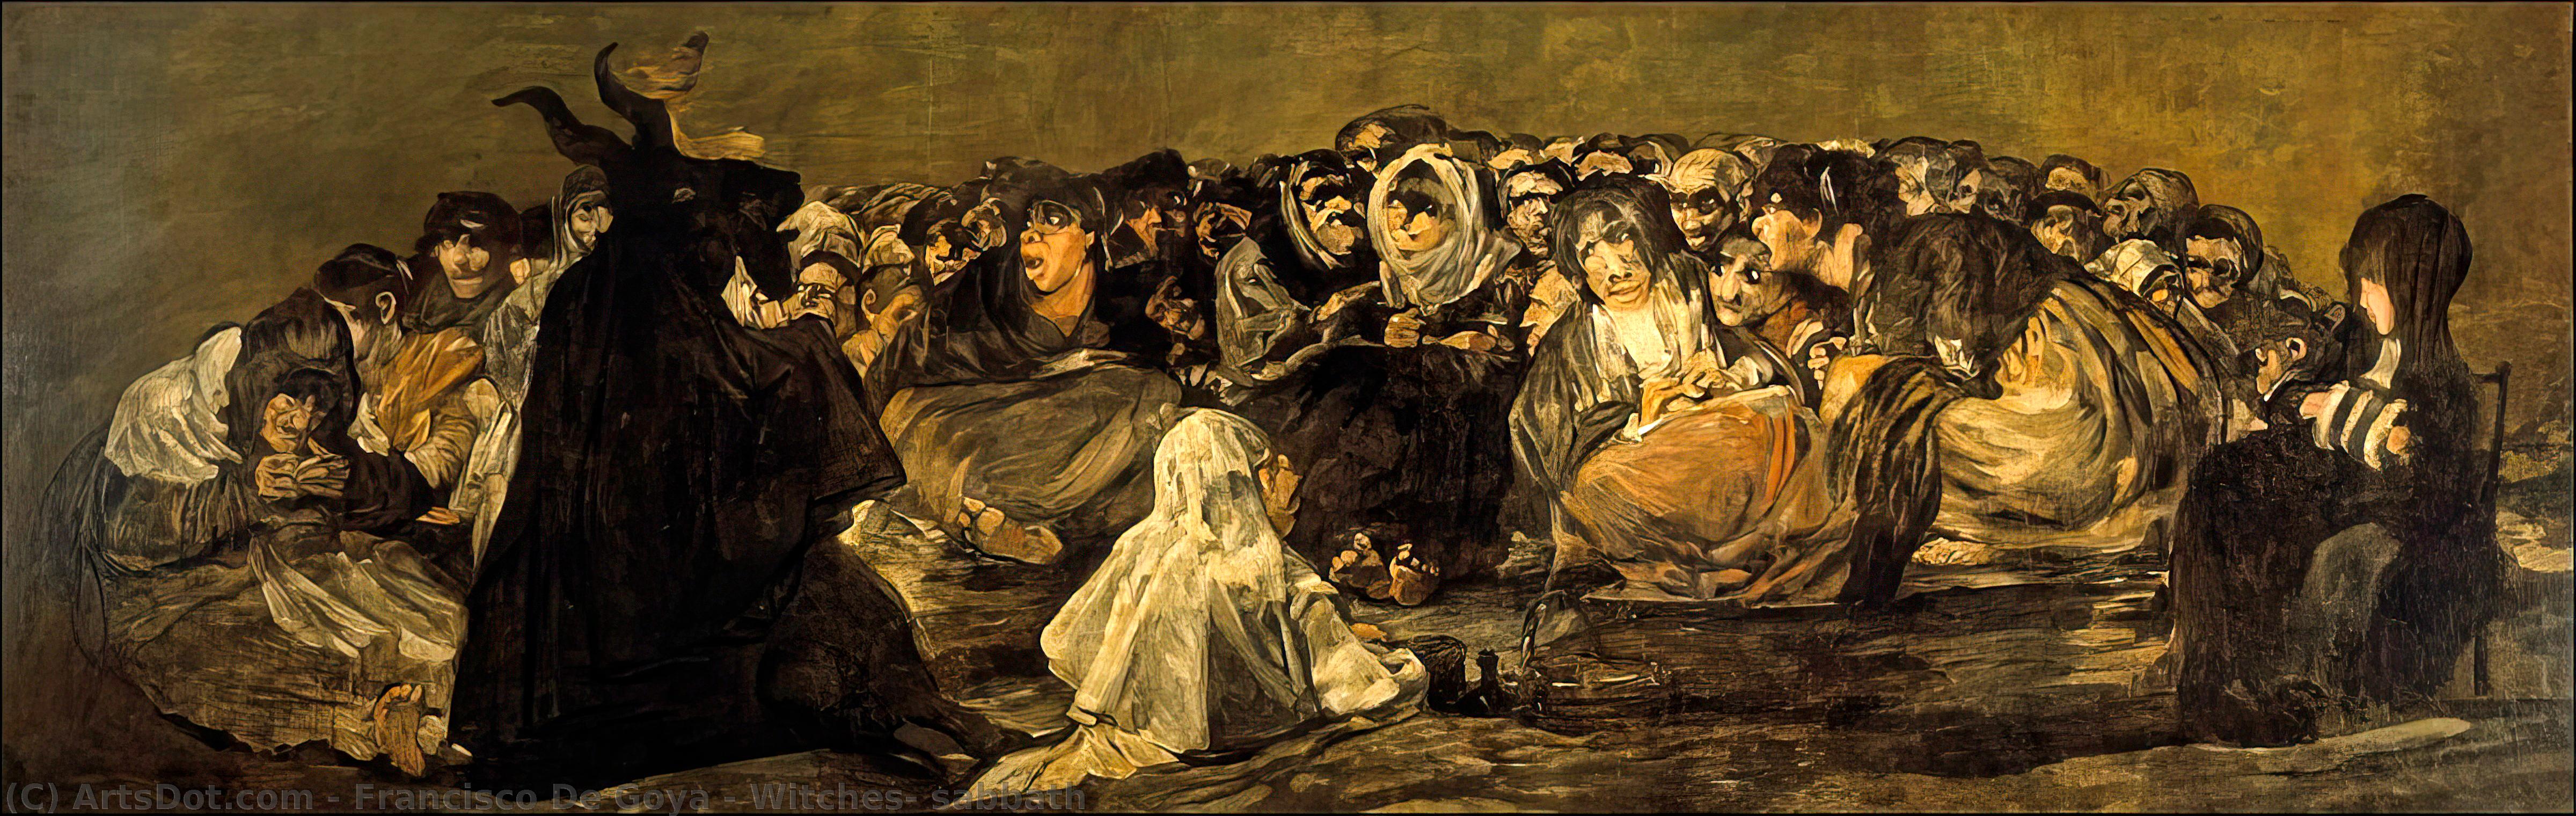 Order Art Reproductions Witches` sabbath, 1821 by Francisco De Goya (1746-1828, Spain) | ArtsDot.com